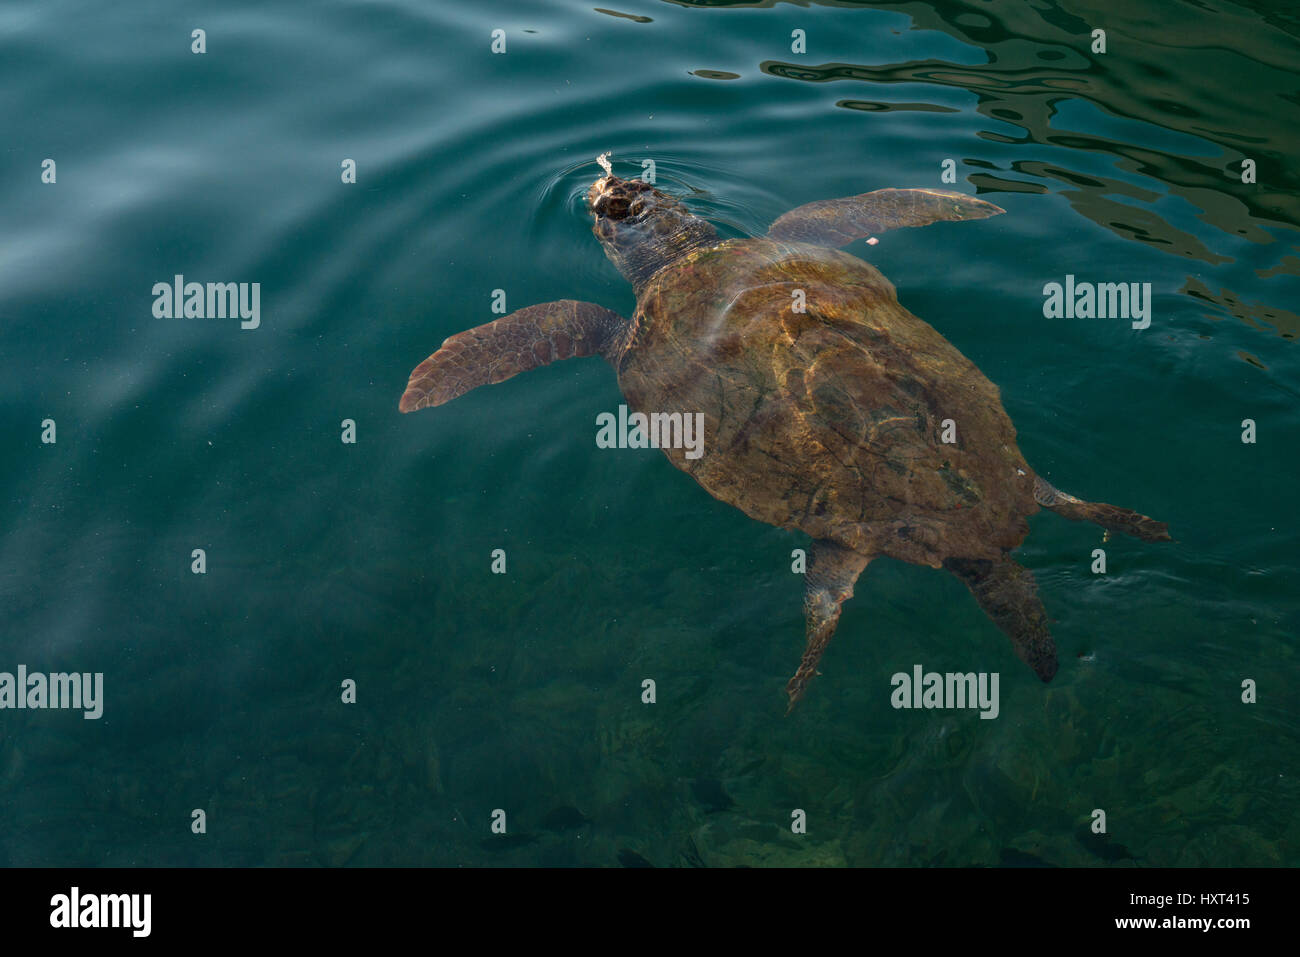 große Schildkröte schwimmt an dunkelgrüner Wasseroberfläche, Insel Kastellorizo, Dodekanes, Griechenland Stock Photo